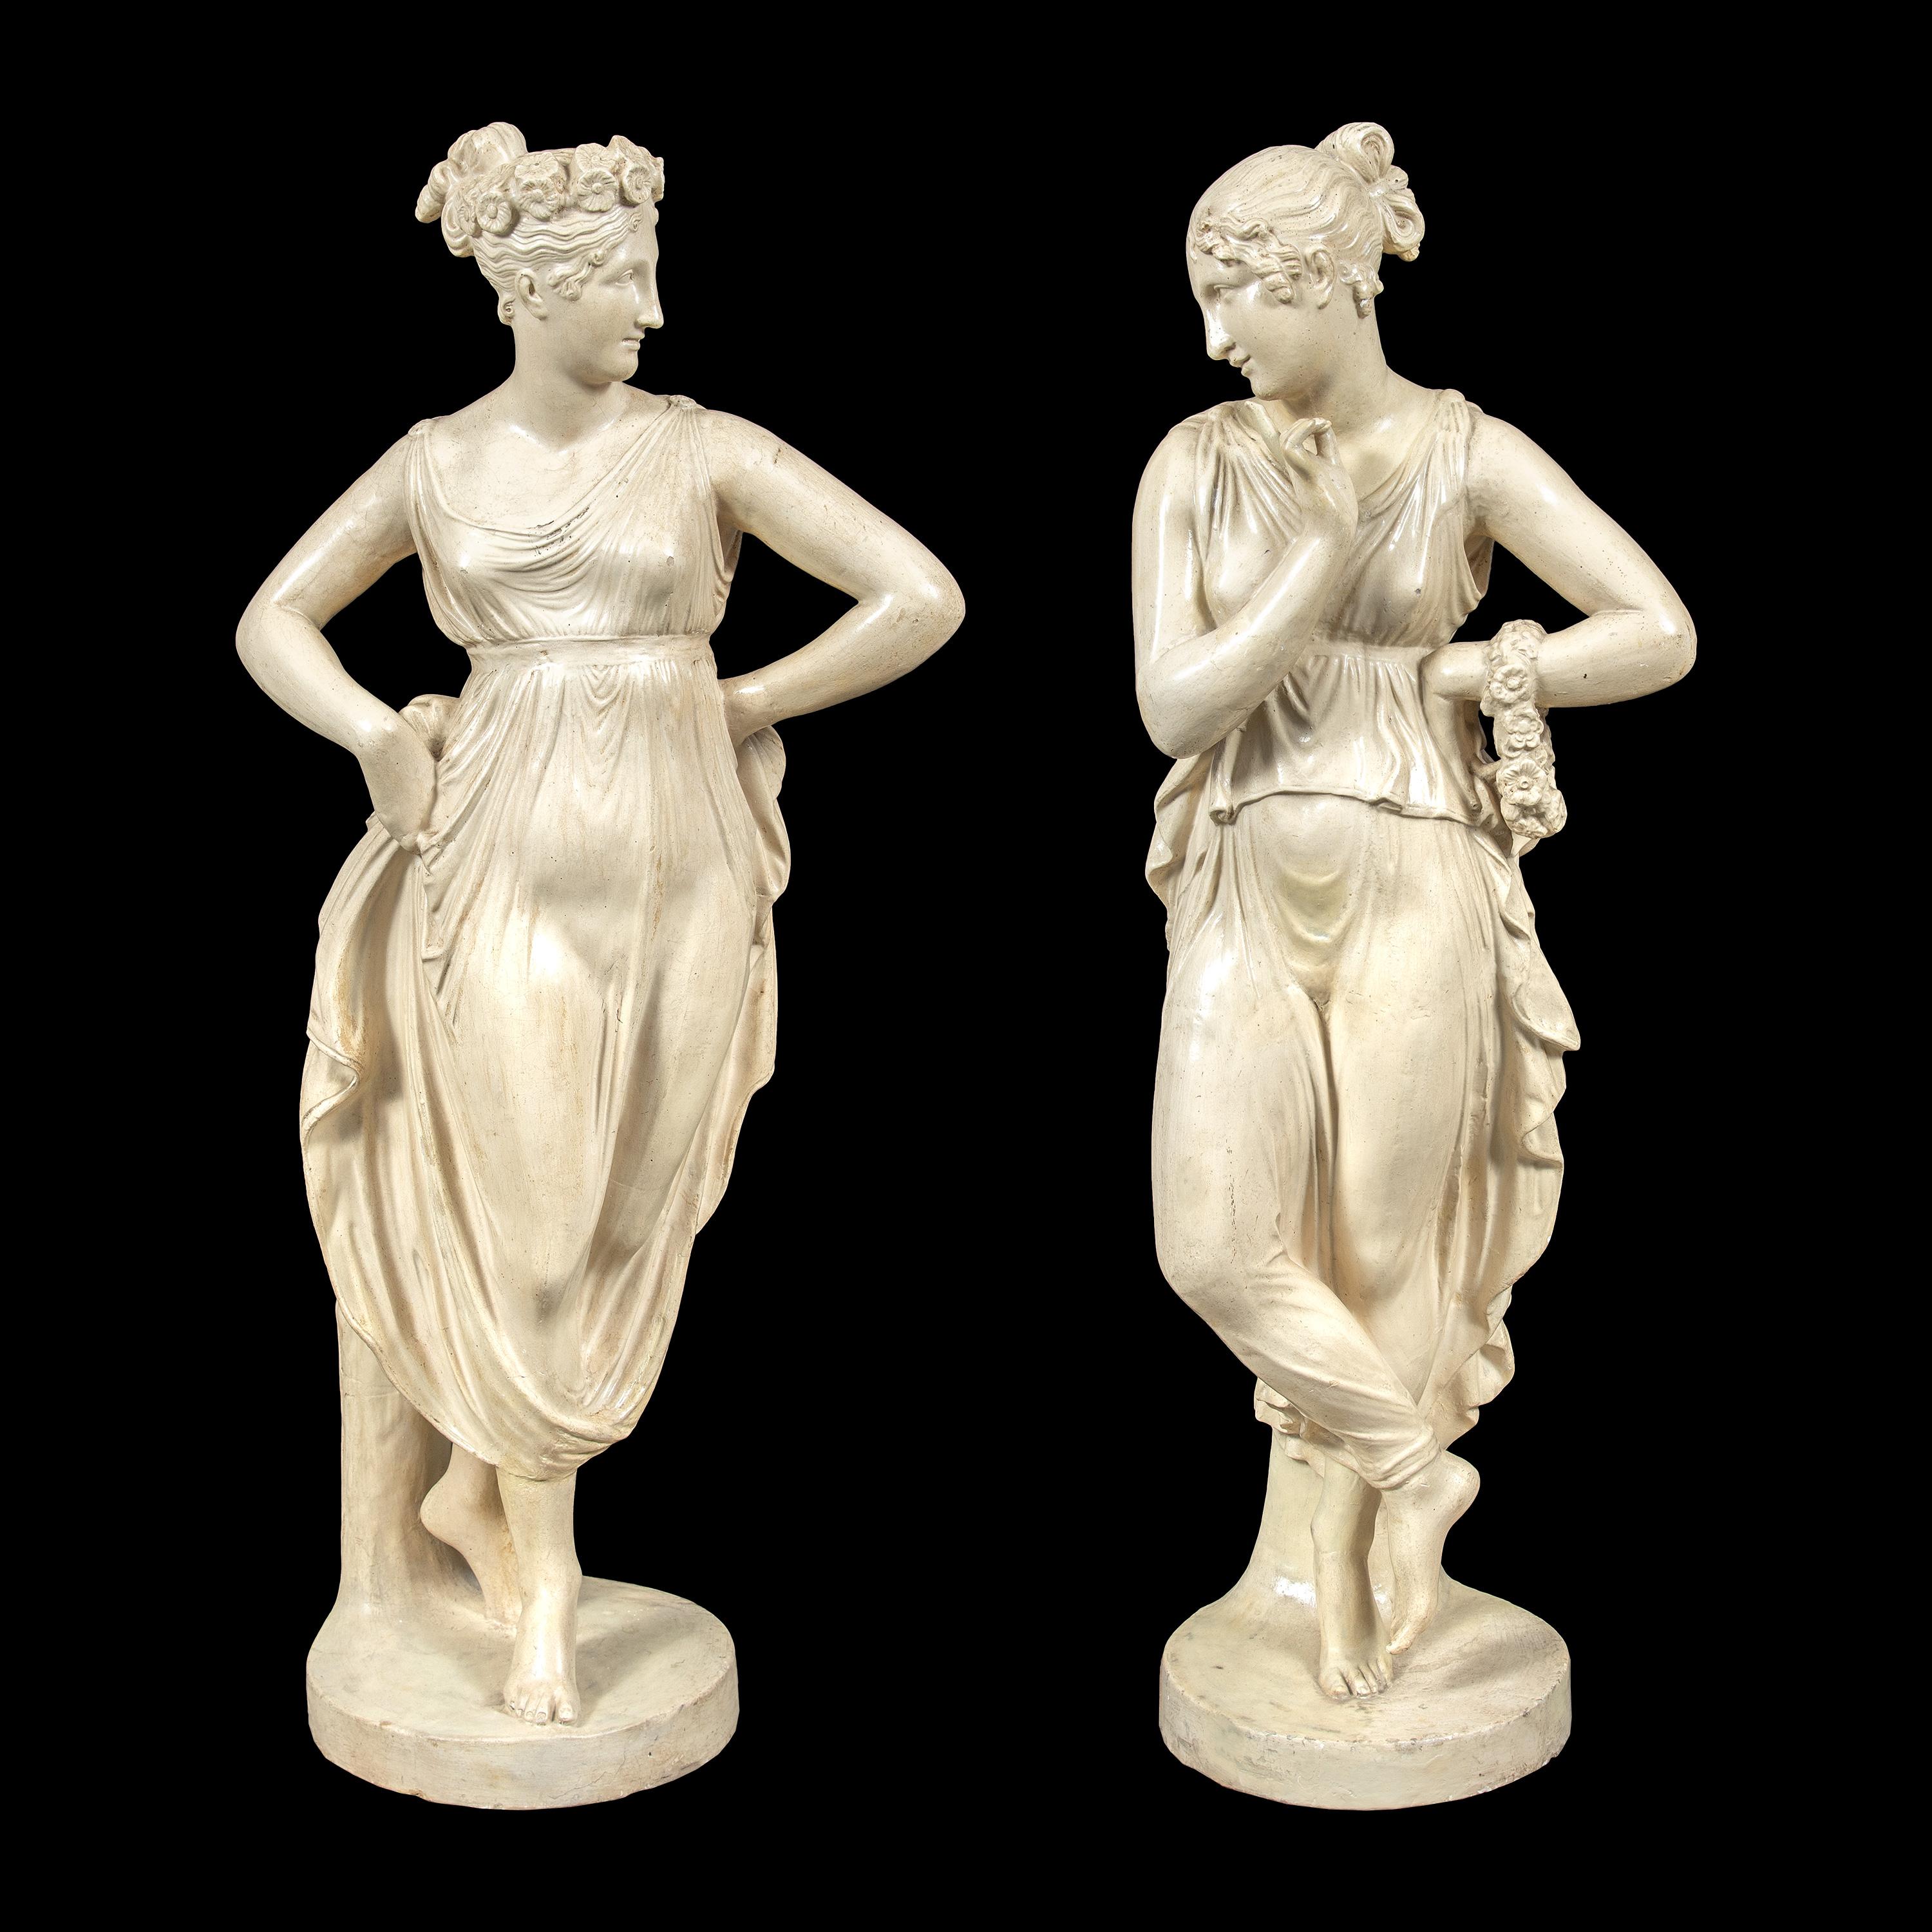 Paar Scagliola-Skulpturen - Tänzerinnen (von Canova). Italien, 19.-20. Jahrhundert.

H 81 x 30 x 30 cm.

Vollständig aus glasierter Terrakotta.

Die Skulpturen sind von den Originalen von Antonio Canova (Possagno 1757 - Venedig 1822) inspiriert, die